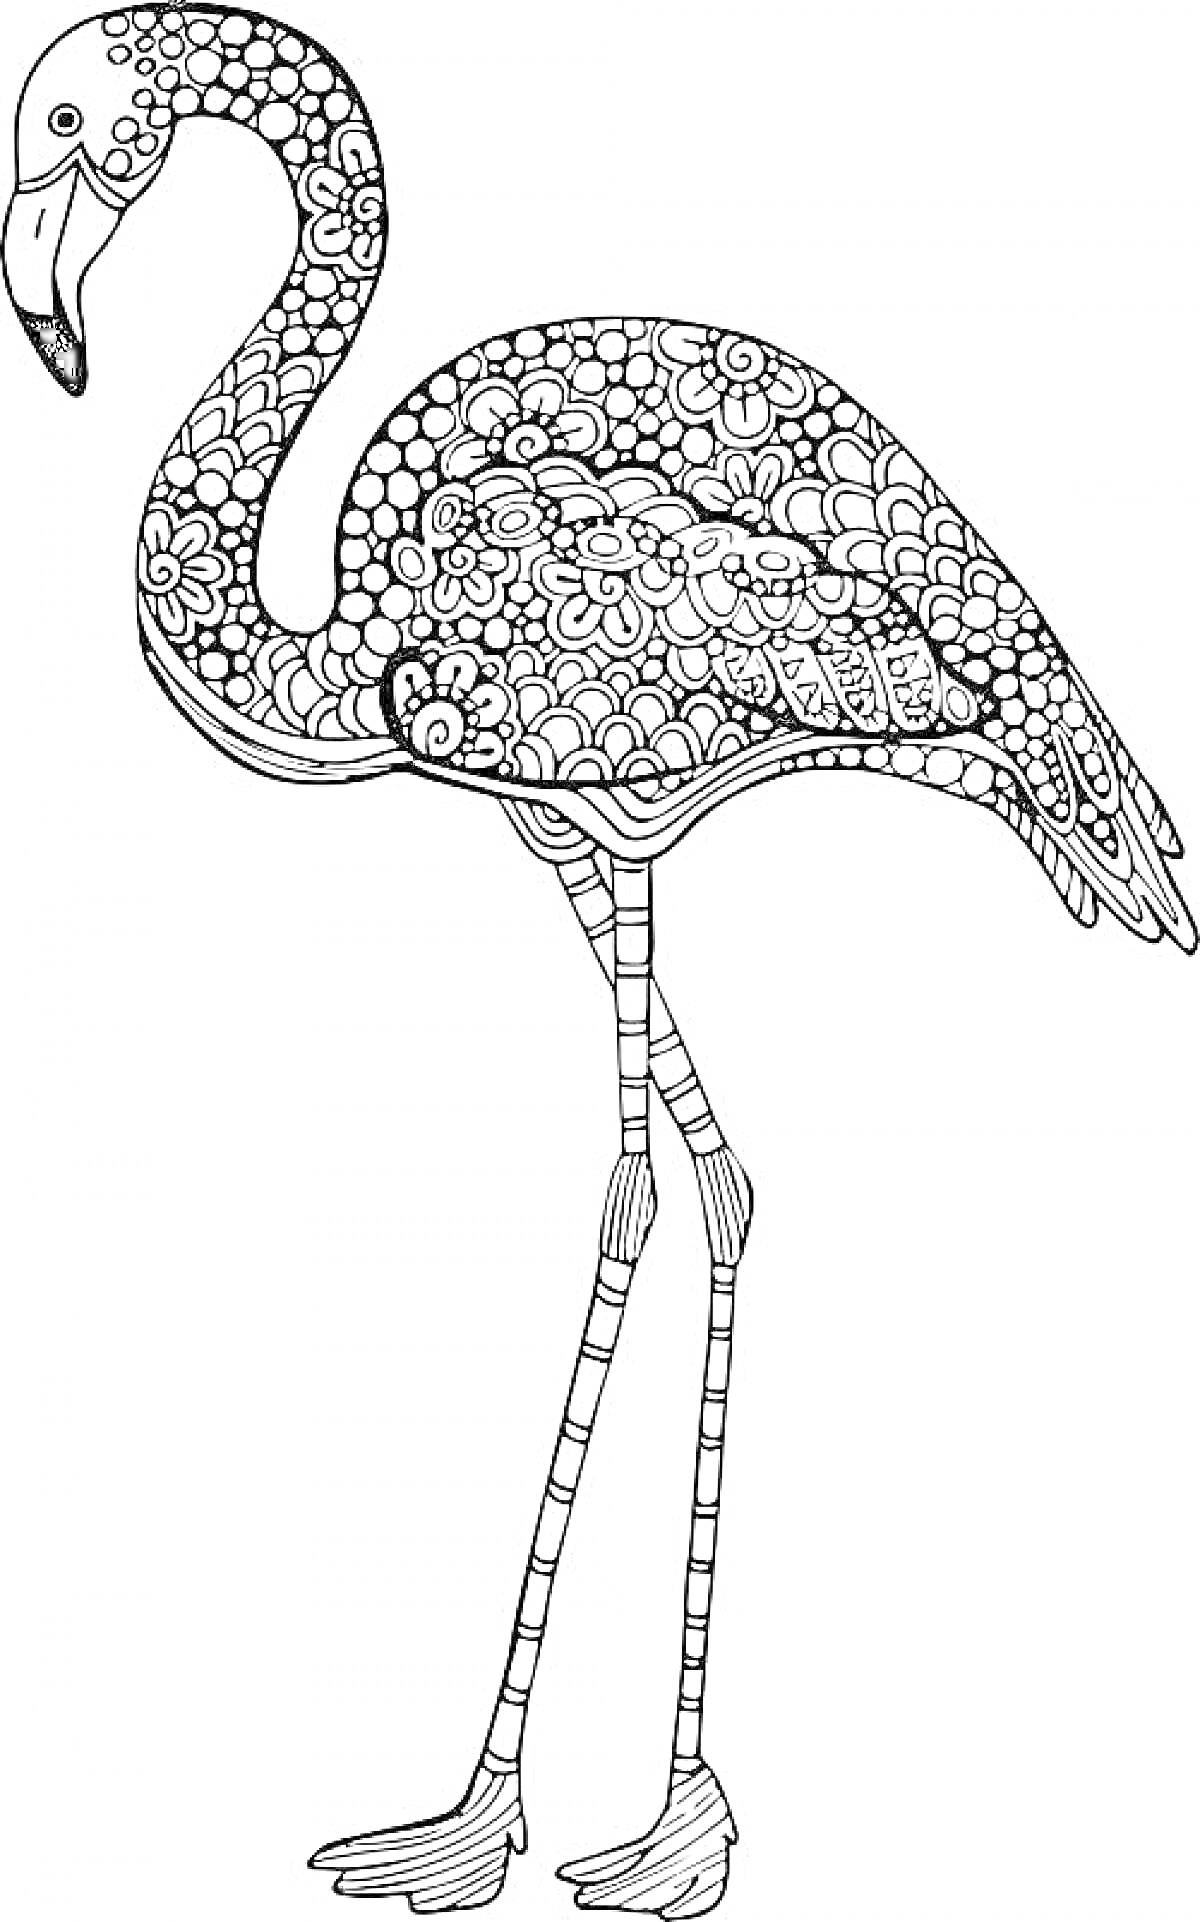 Антистресс раскраска фламинго с узорами из цветов и геометрических фигур